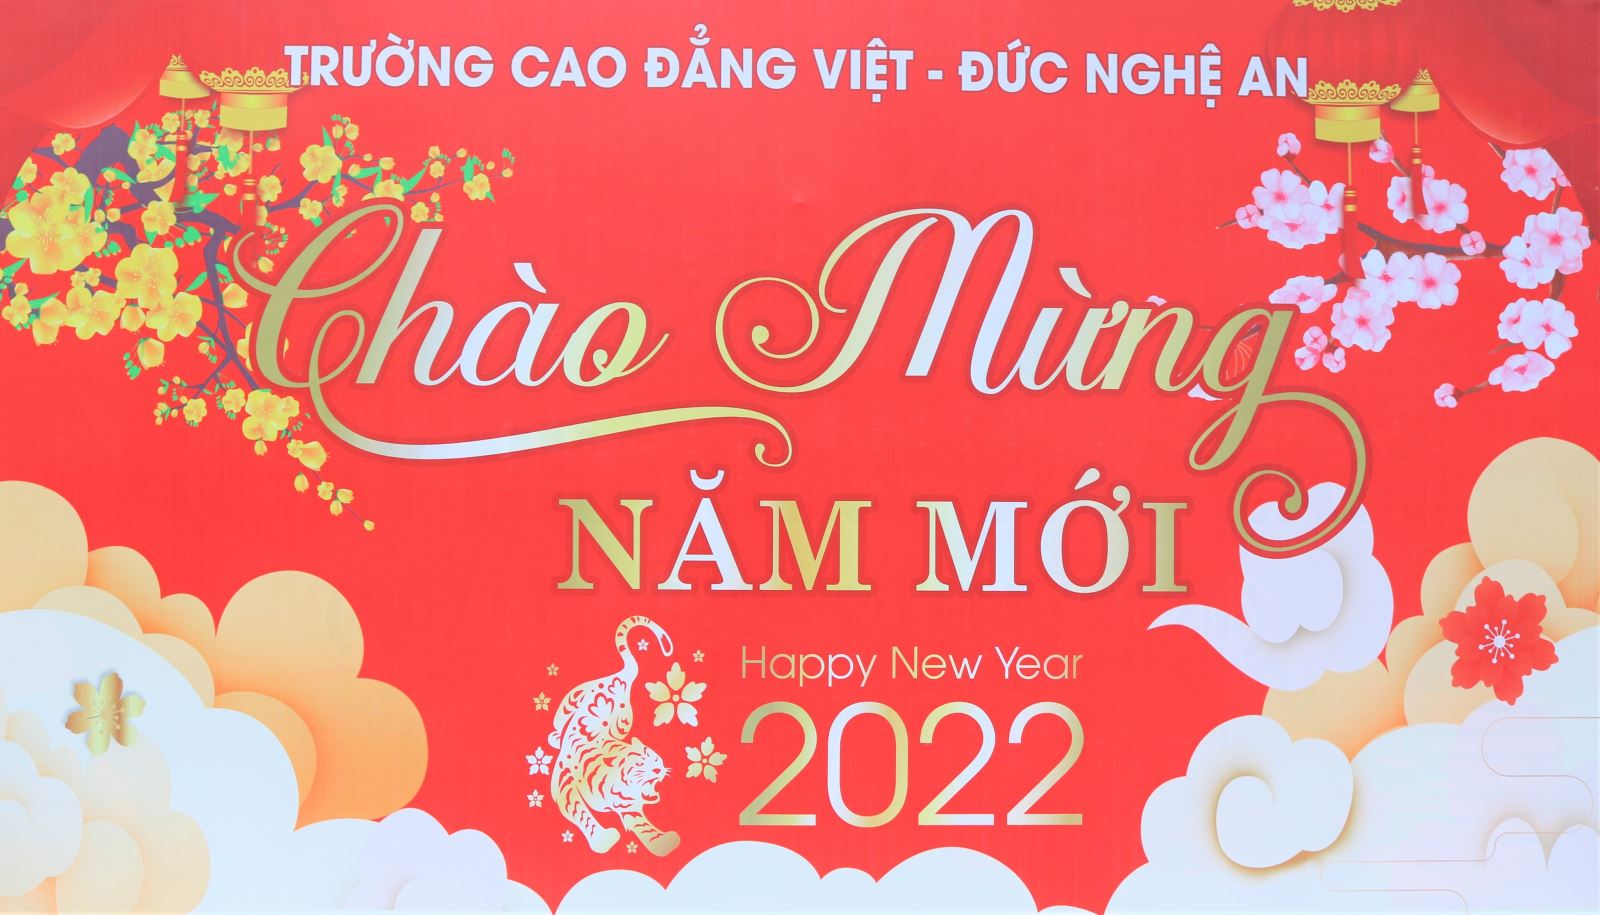  Tết Dương lịch - Chào năm mới 2022! – Năm mới, mục đích mới, ước mong mới và thành công mới!